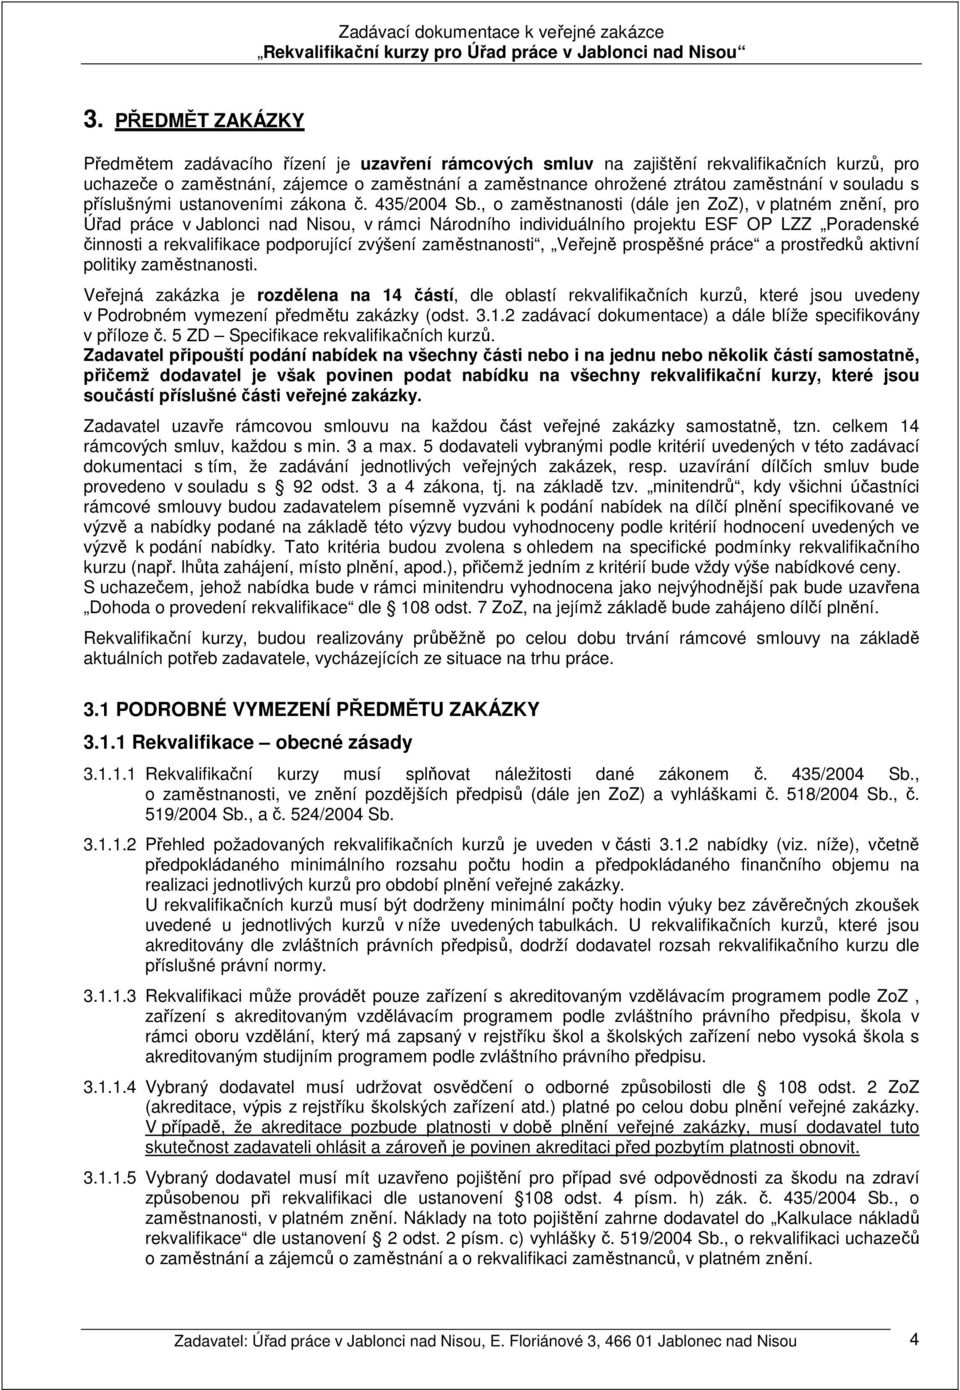 , o zaměstnanosti (dále jen ZoZ), v platném znění, pro Úřad práce v Jablonci nad Nisou, v rámci Národního individuálního projektu ESF OP LZZ Poradenské činnosti a rekvalifikace podporující zvýšení